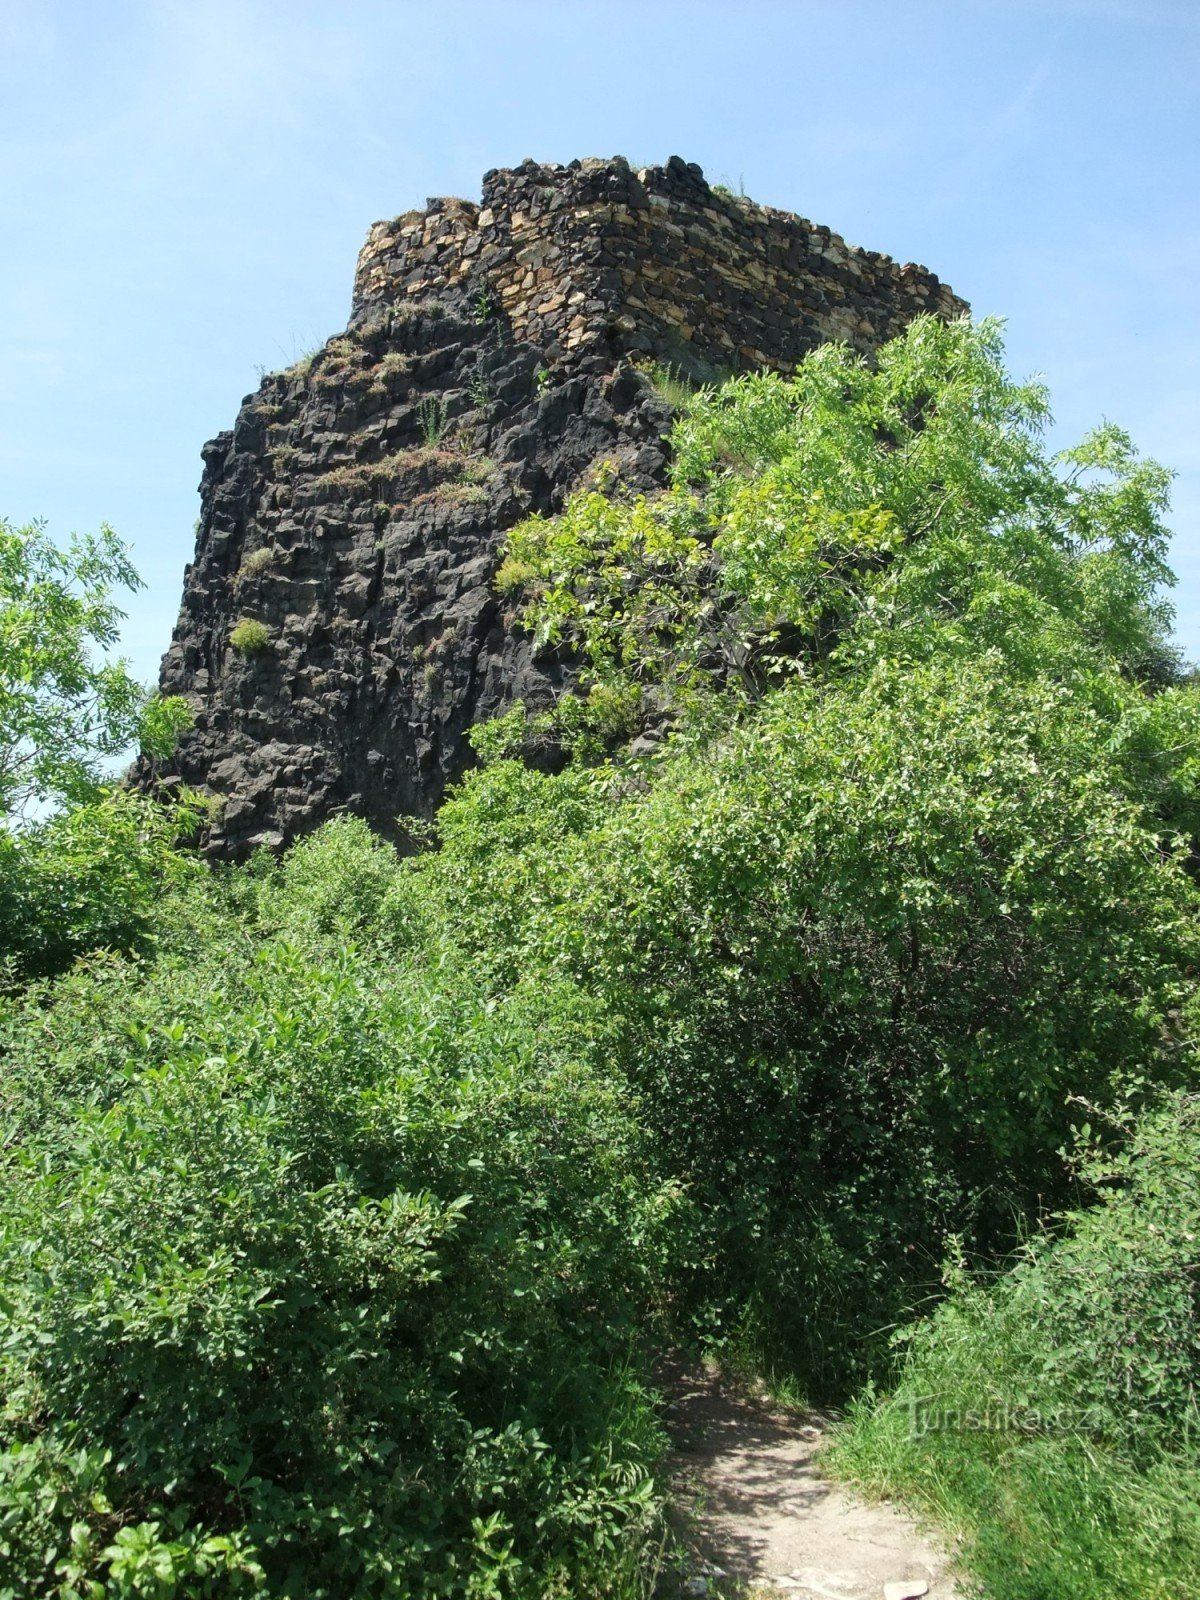 Kula dvorca Kamýk